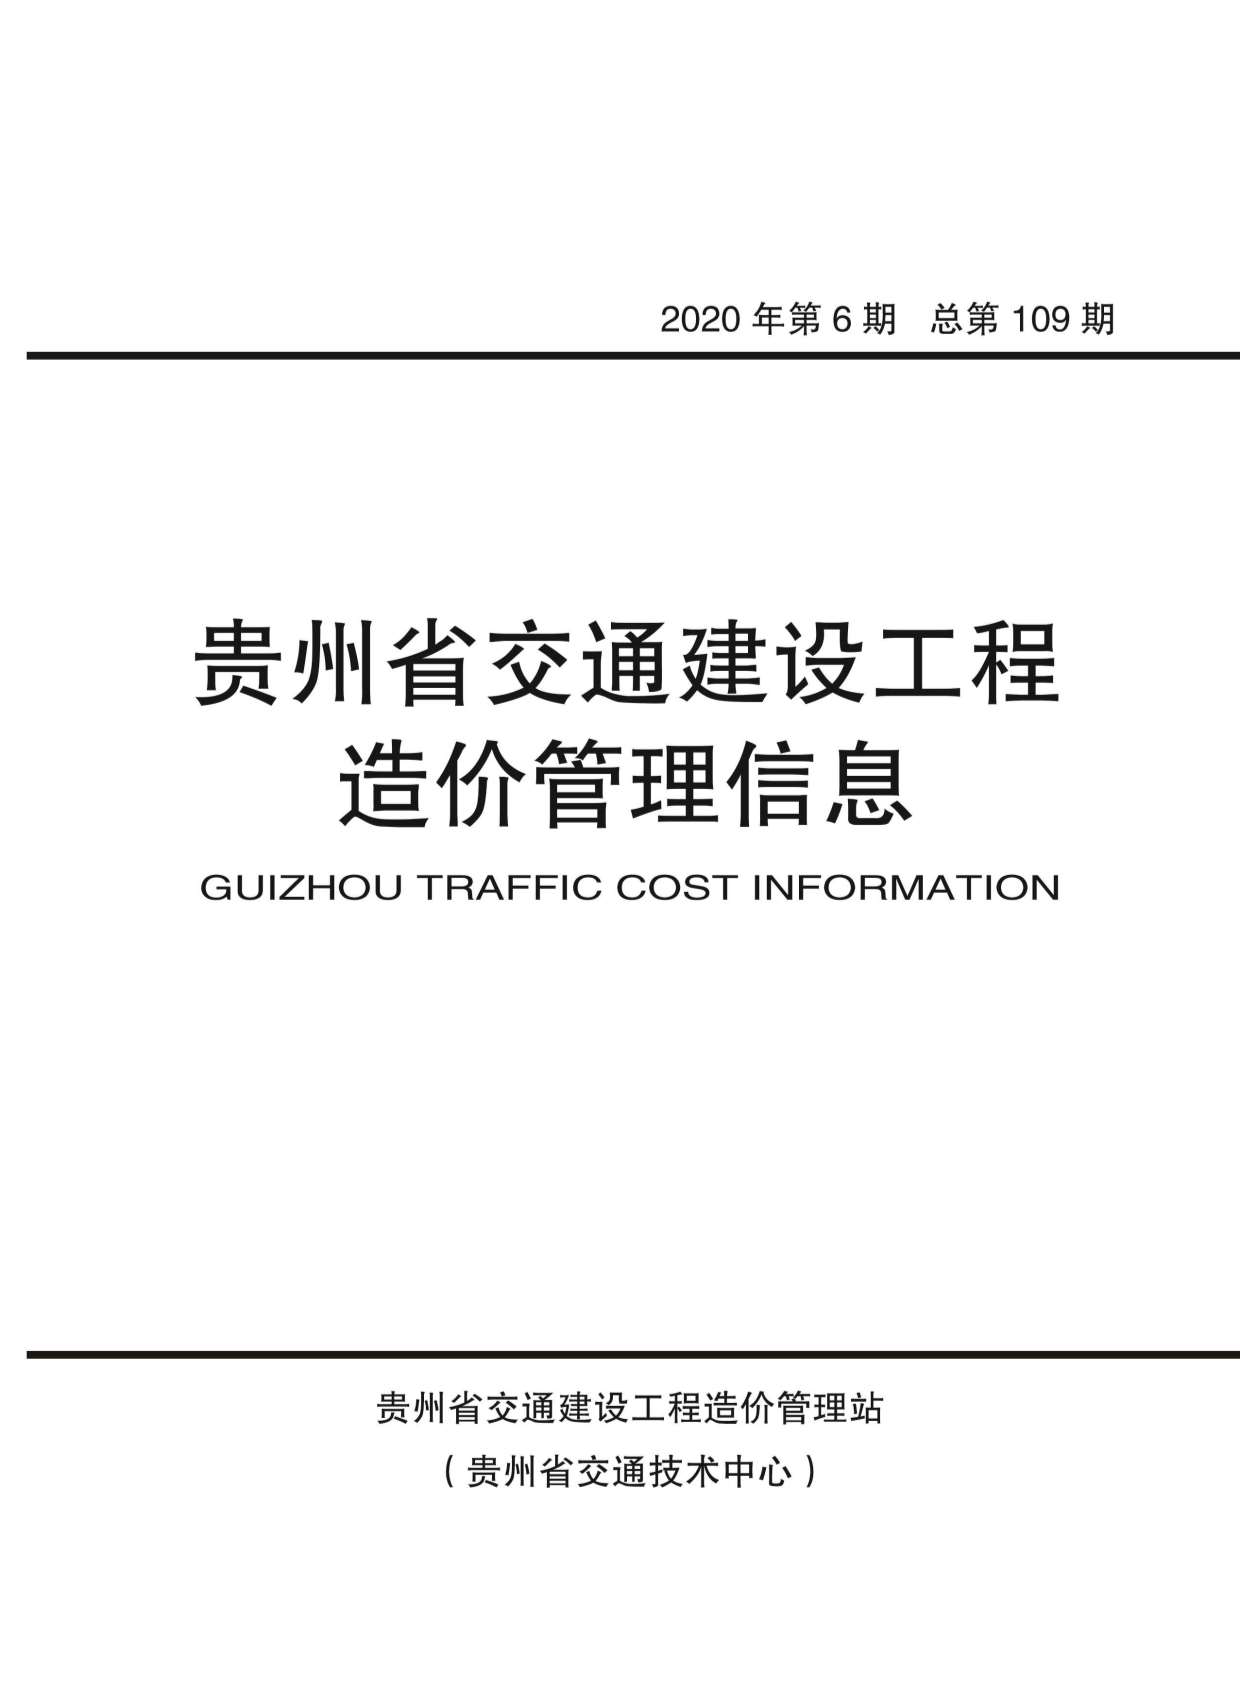 贵州省2020年6月交通工程信息价